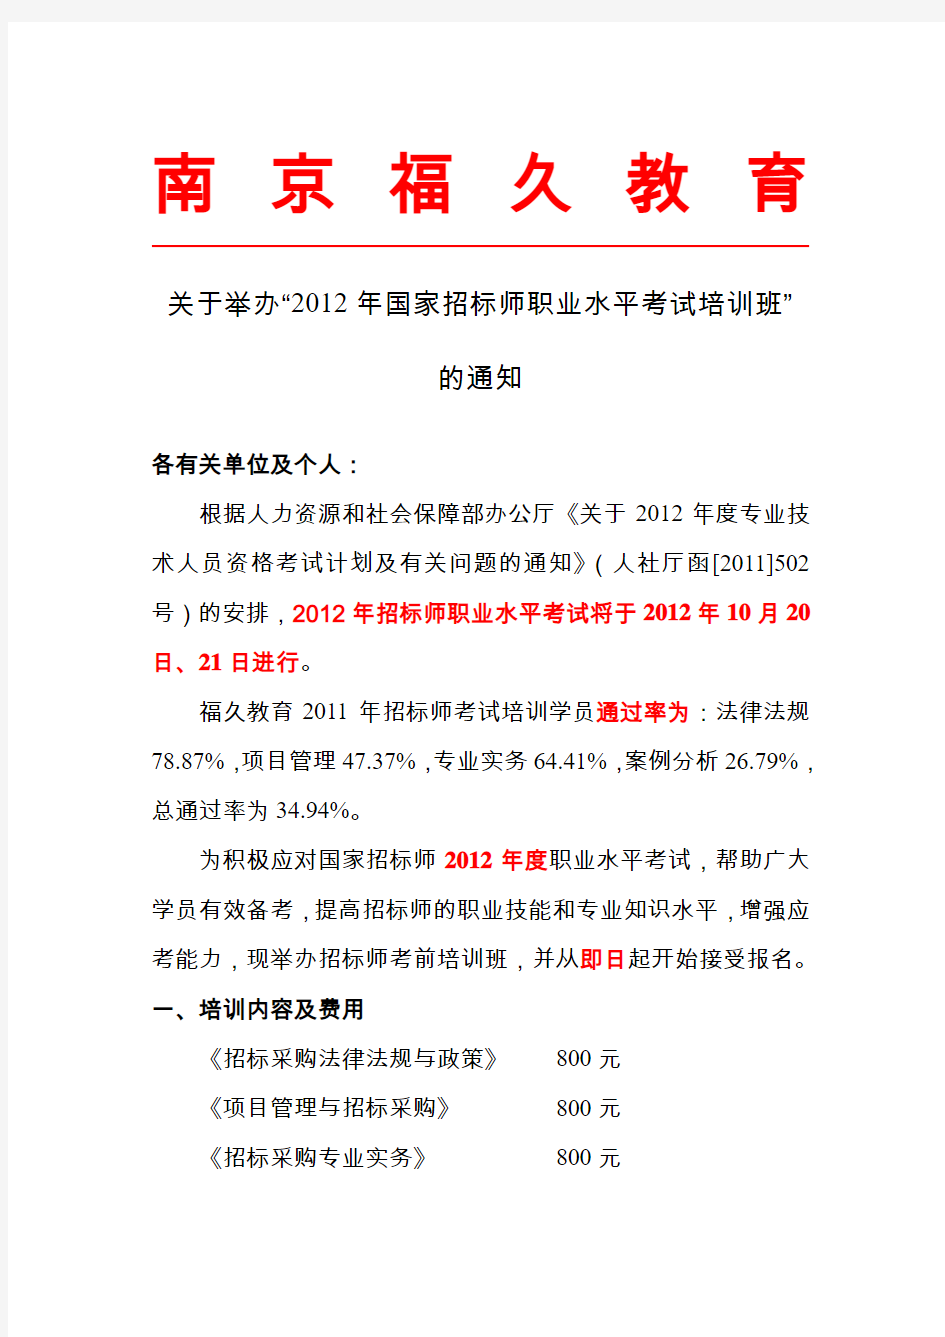 江苏省2012年度国家招标师职业水平考试考前辅导通知